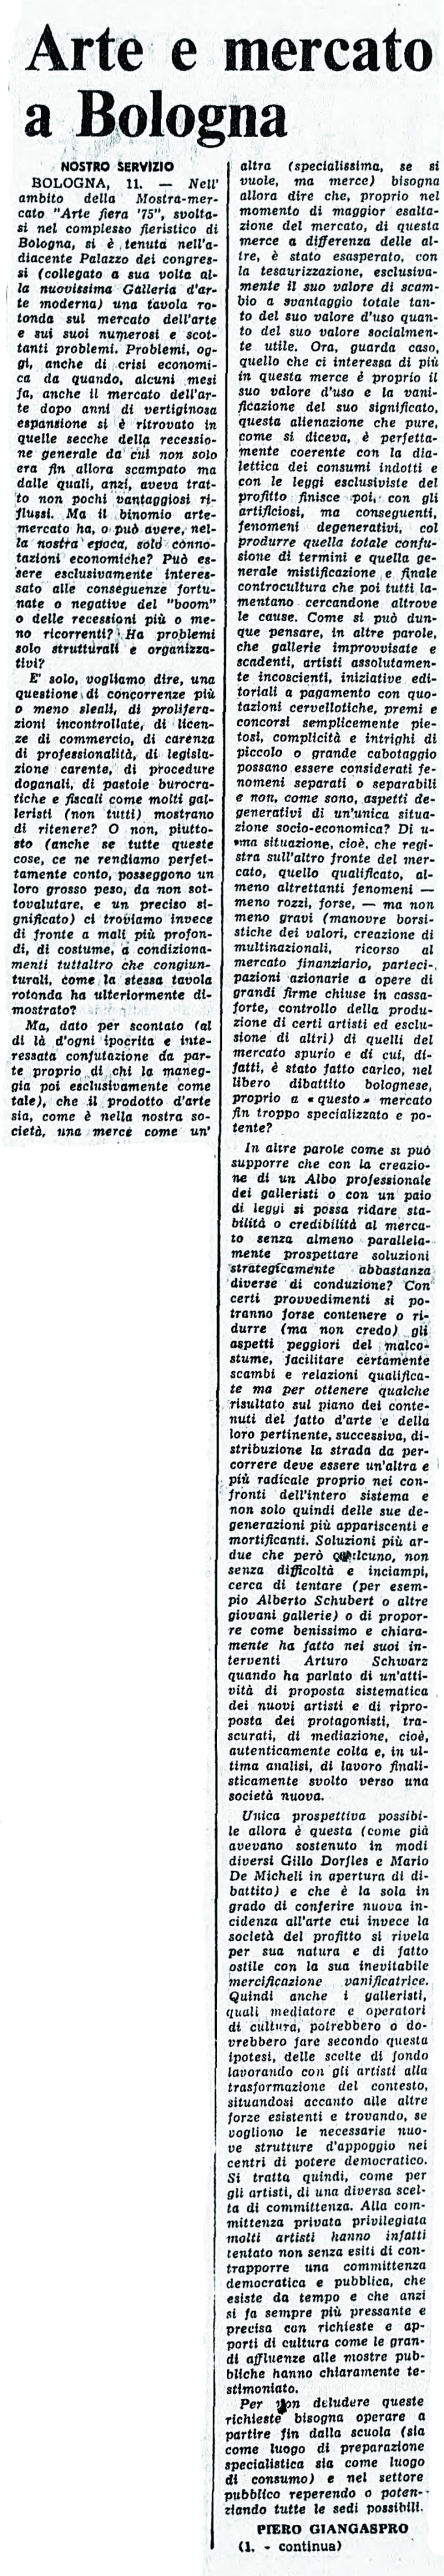 03 12 giugno 1975 mostra-mercato bologna 1-inizio